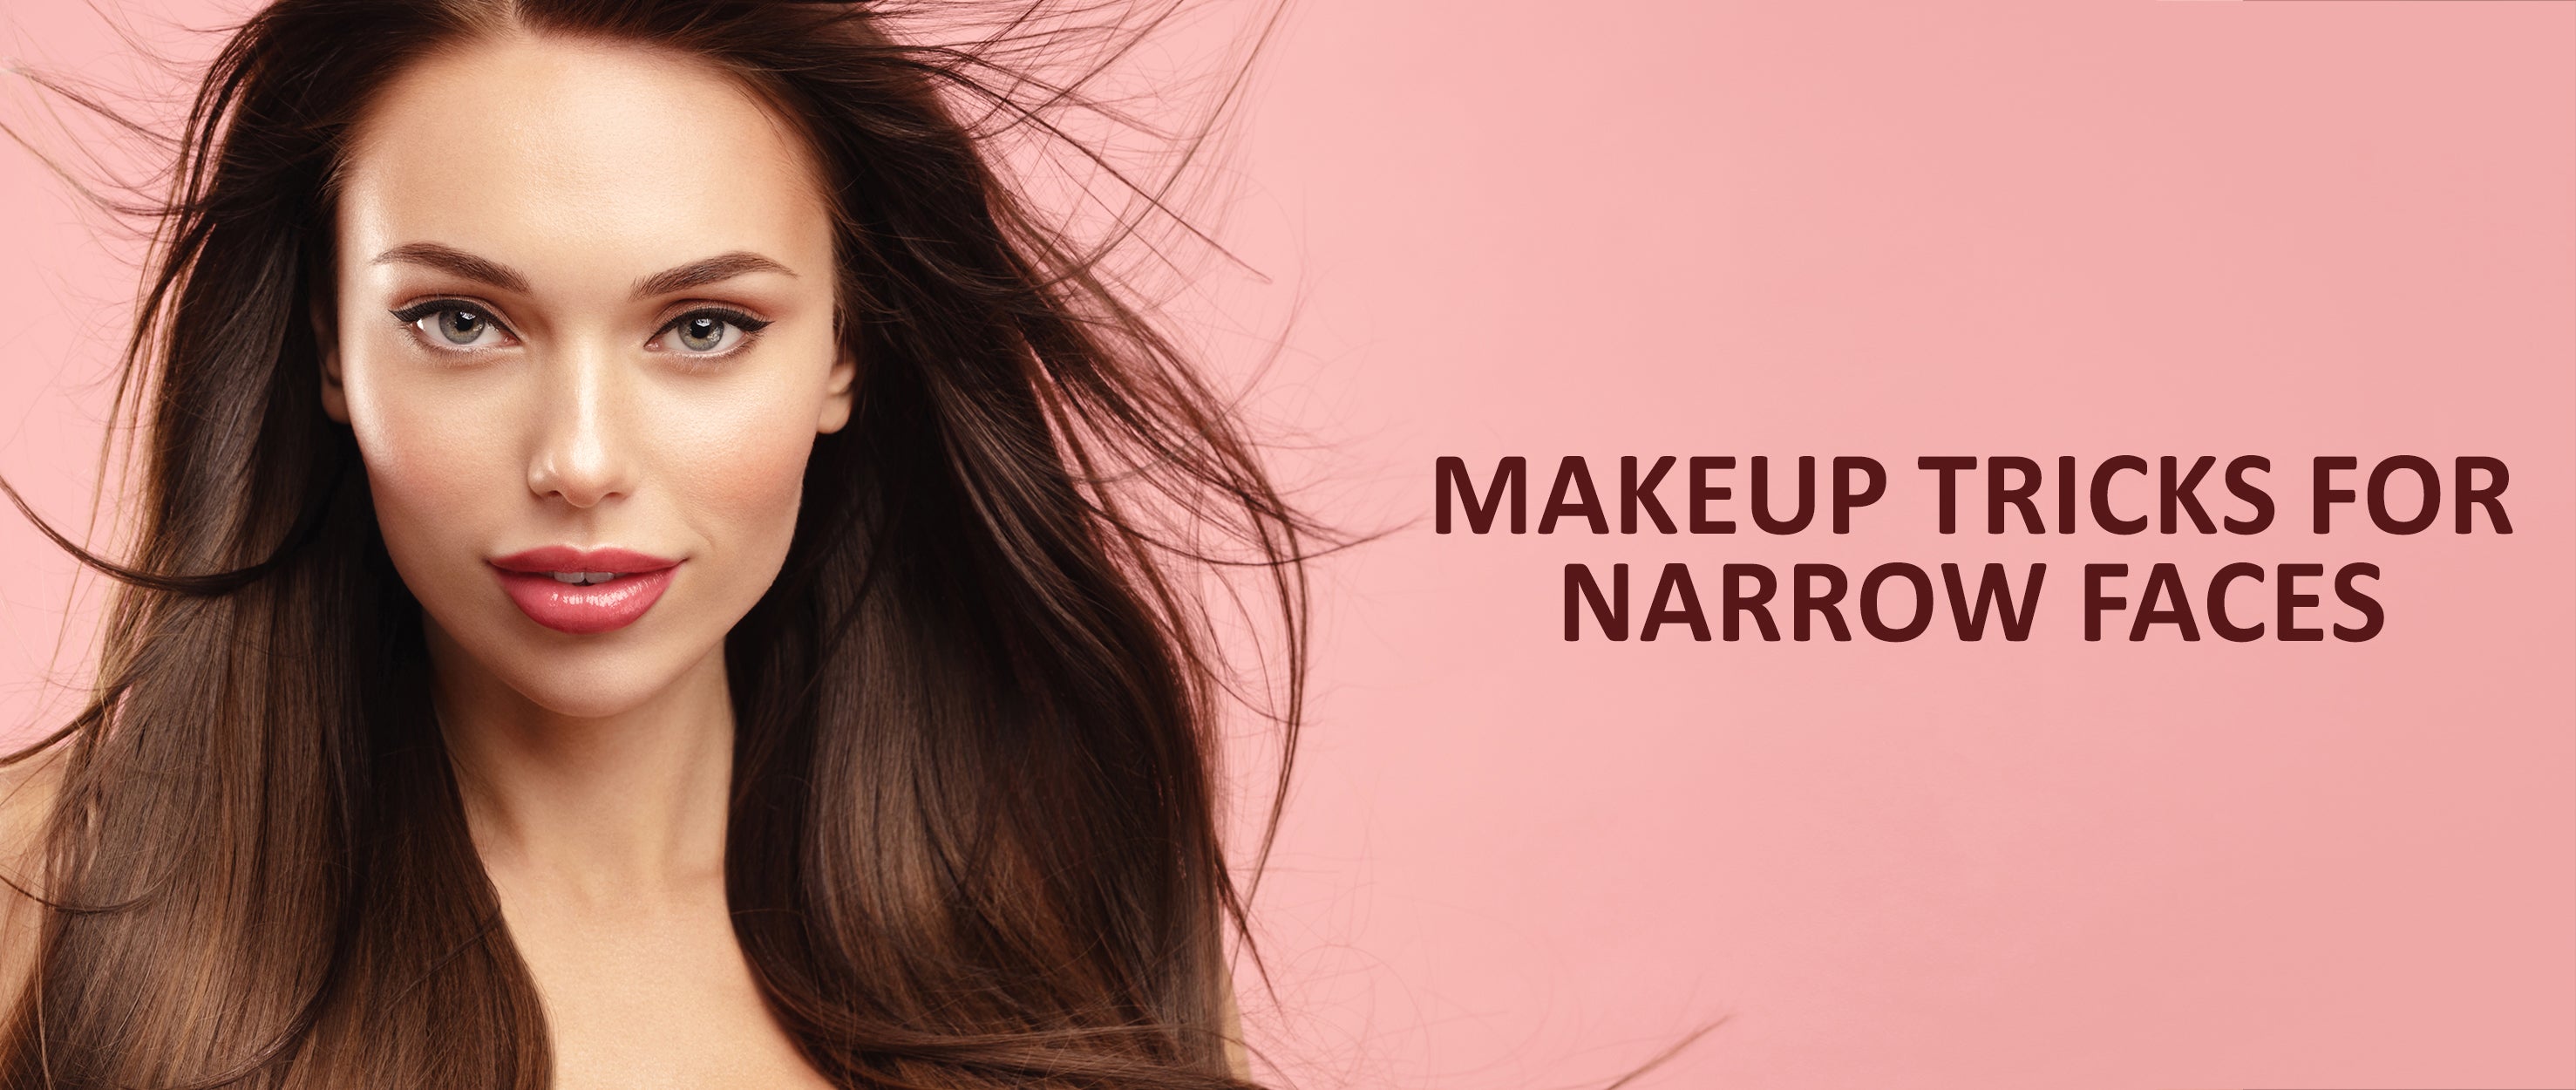 Face Contouring Makeup Guide - Contour Makeup Tips & Hacks